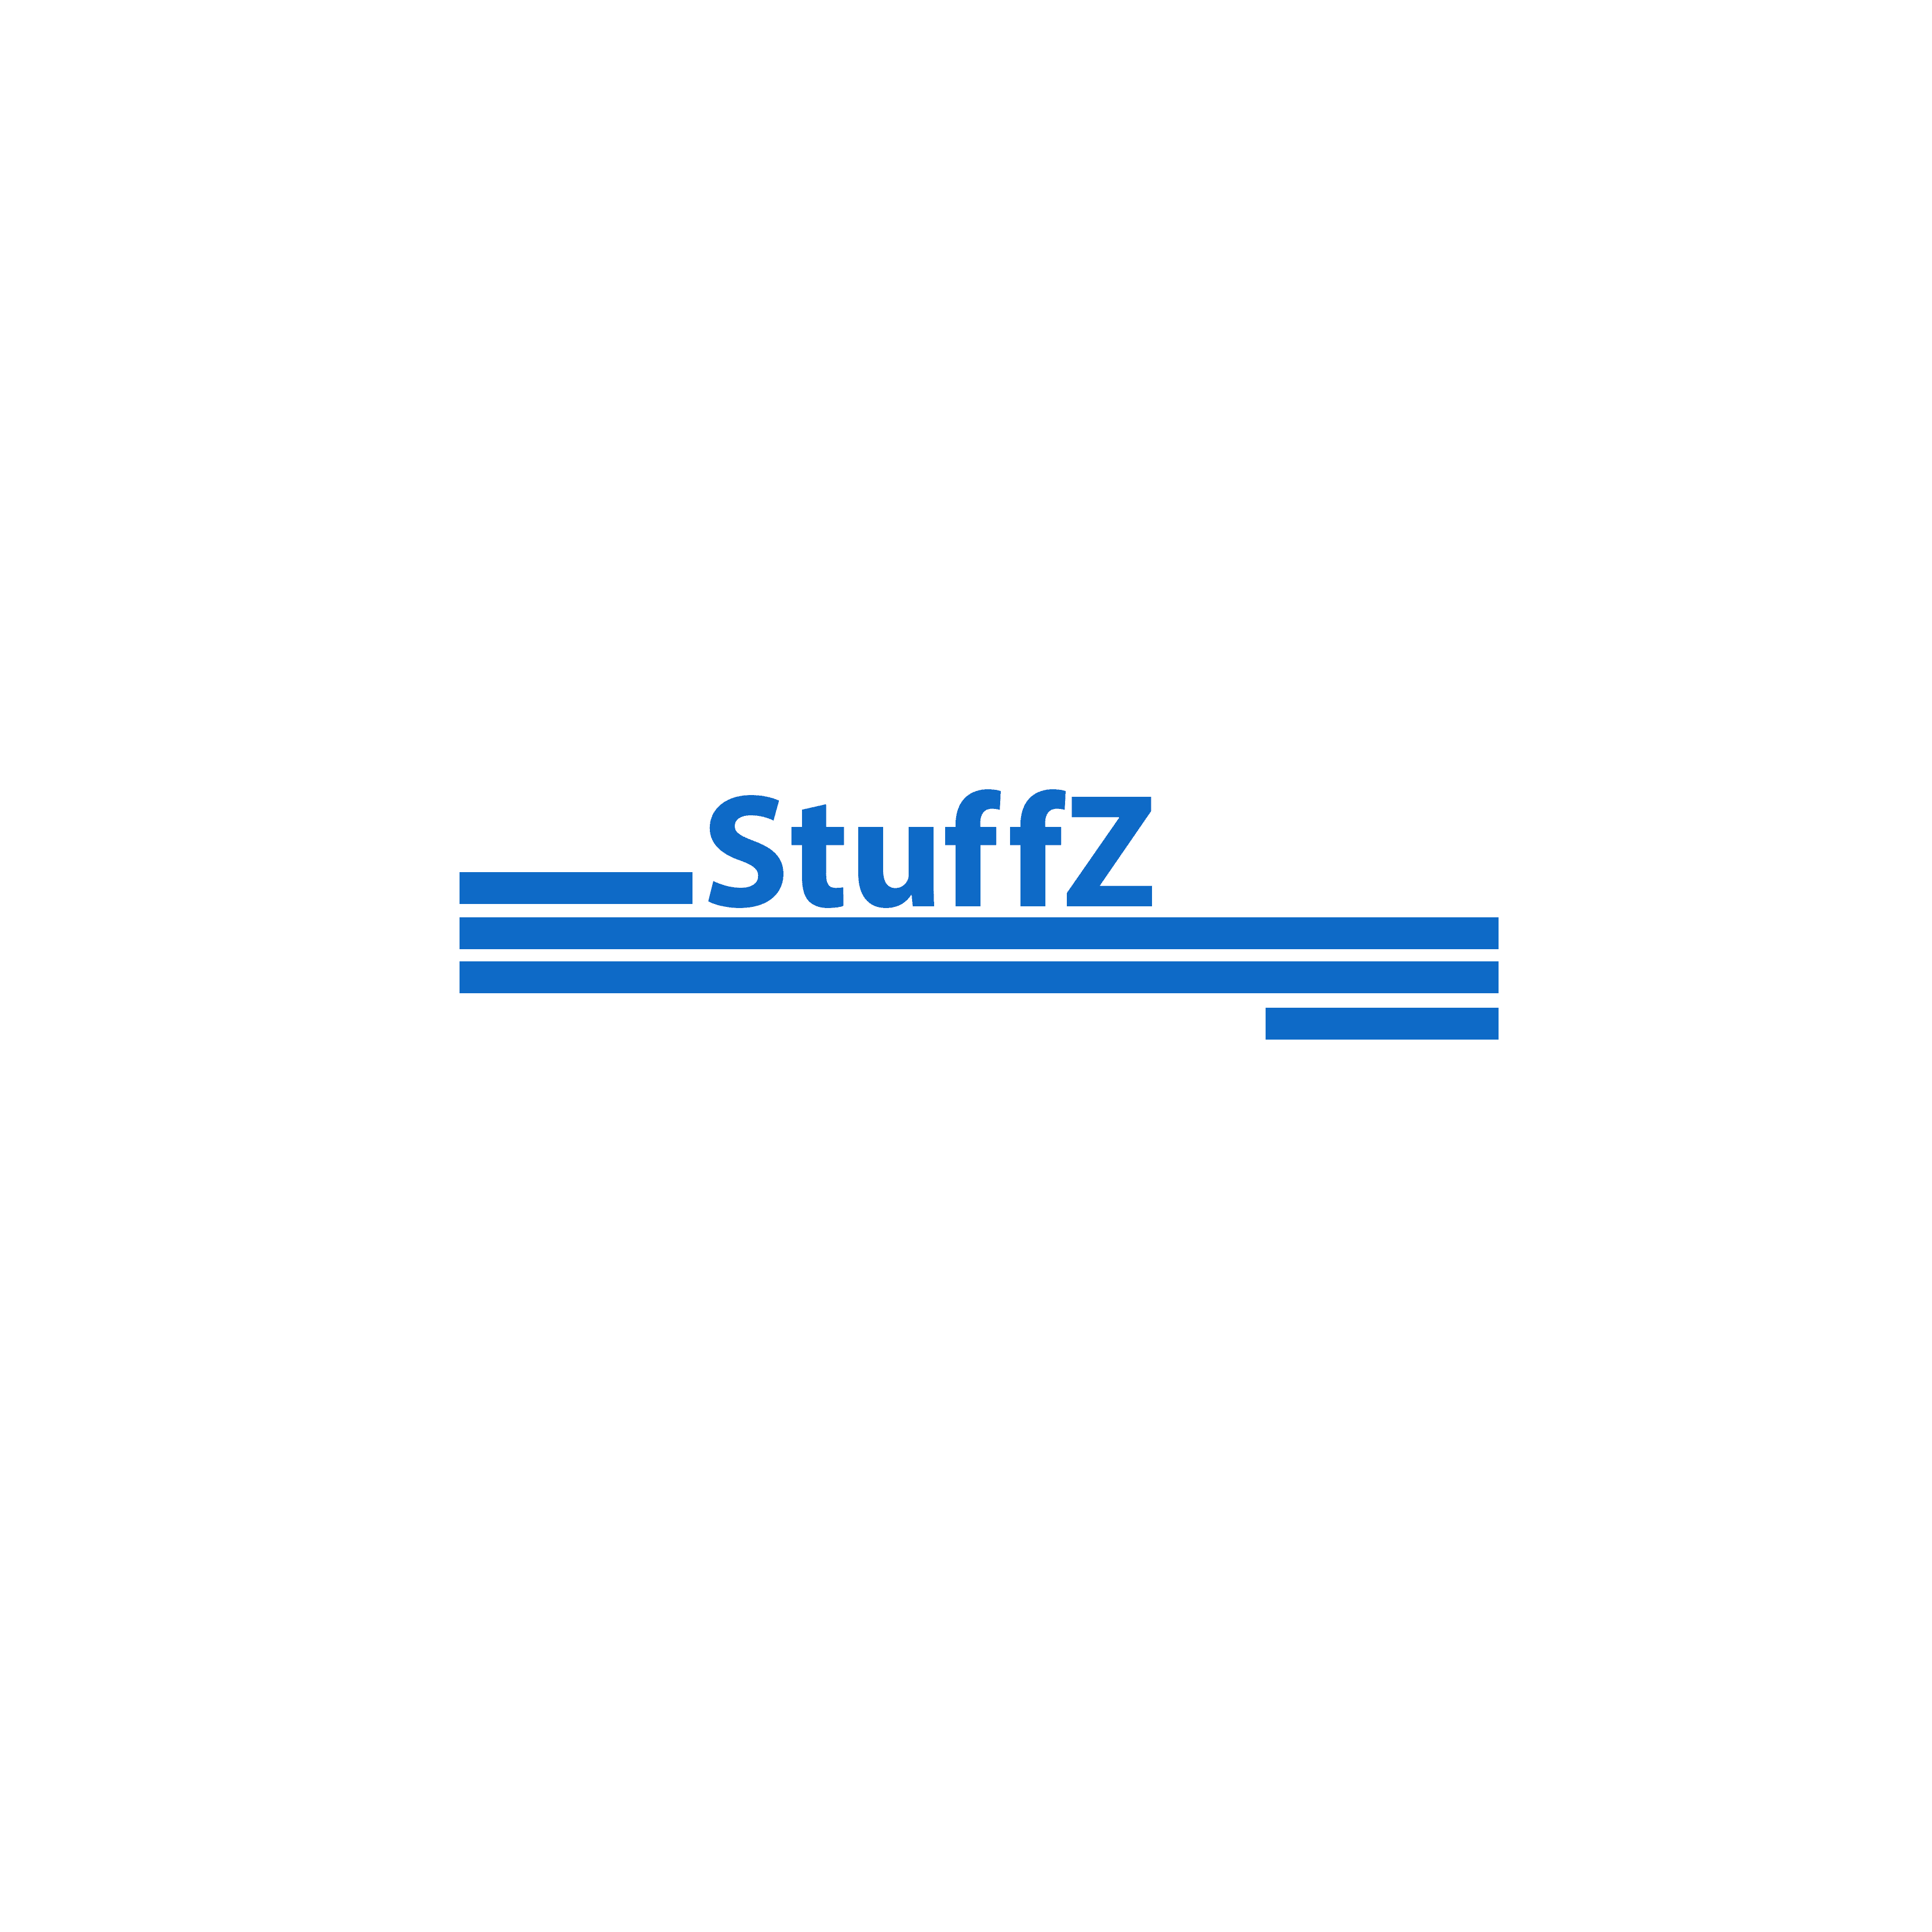 Stuffz